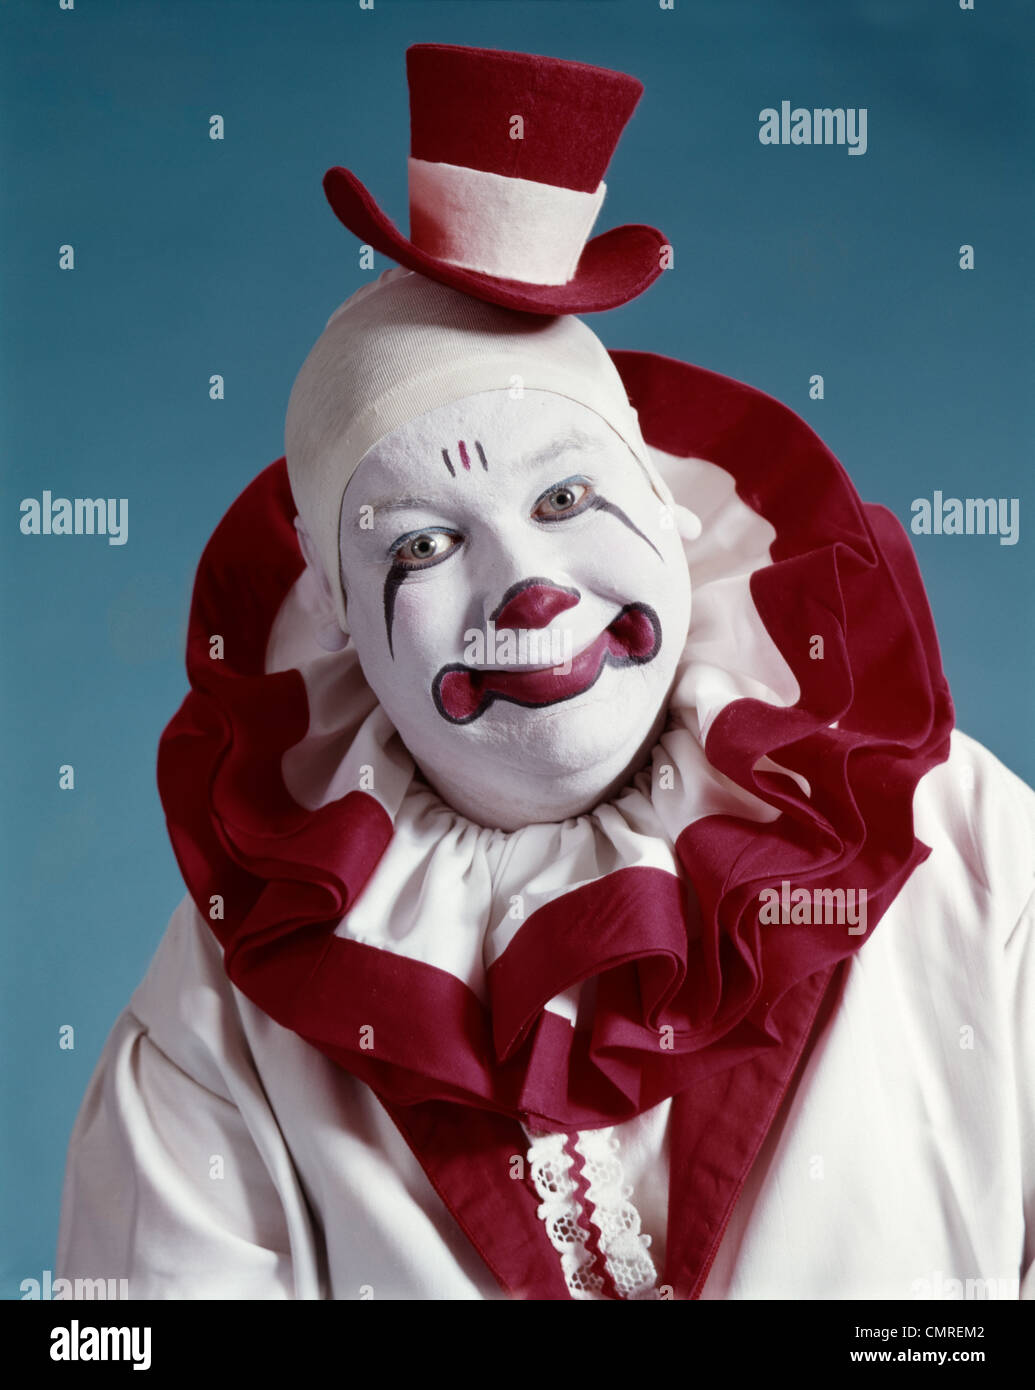 1970 Portrait de clown de cirque EN COSTUME ROUGE ET BLANC, LOOKING AT CAMERA Banque D'Images